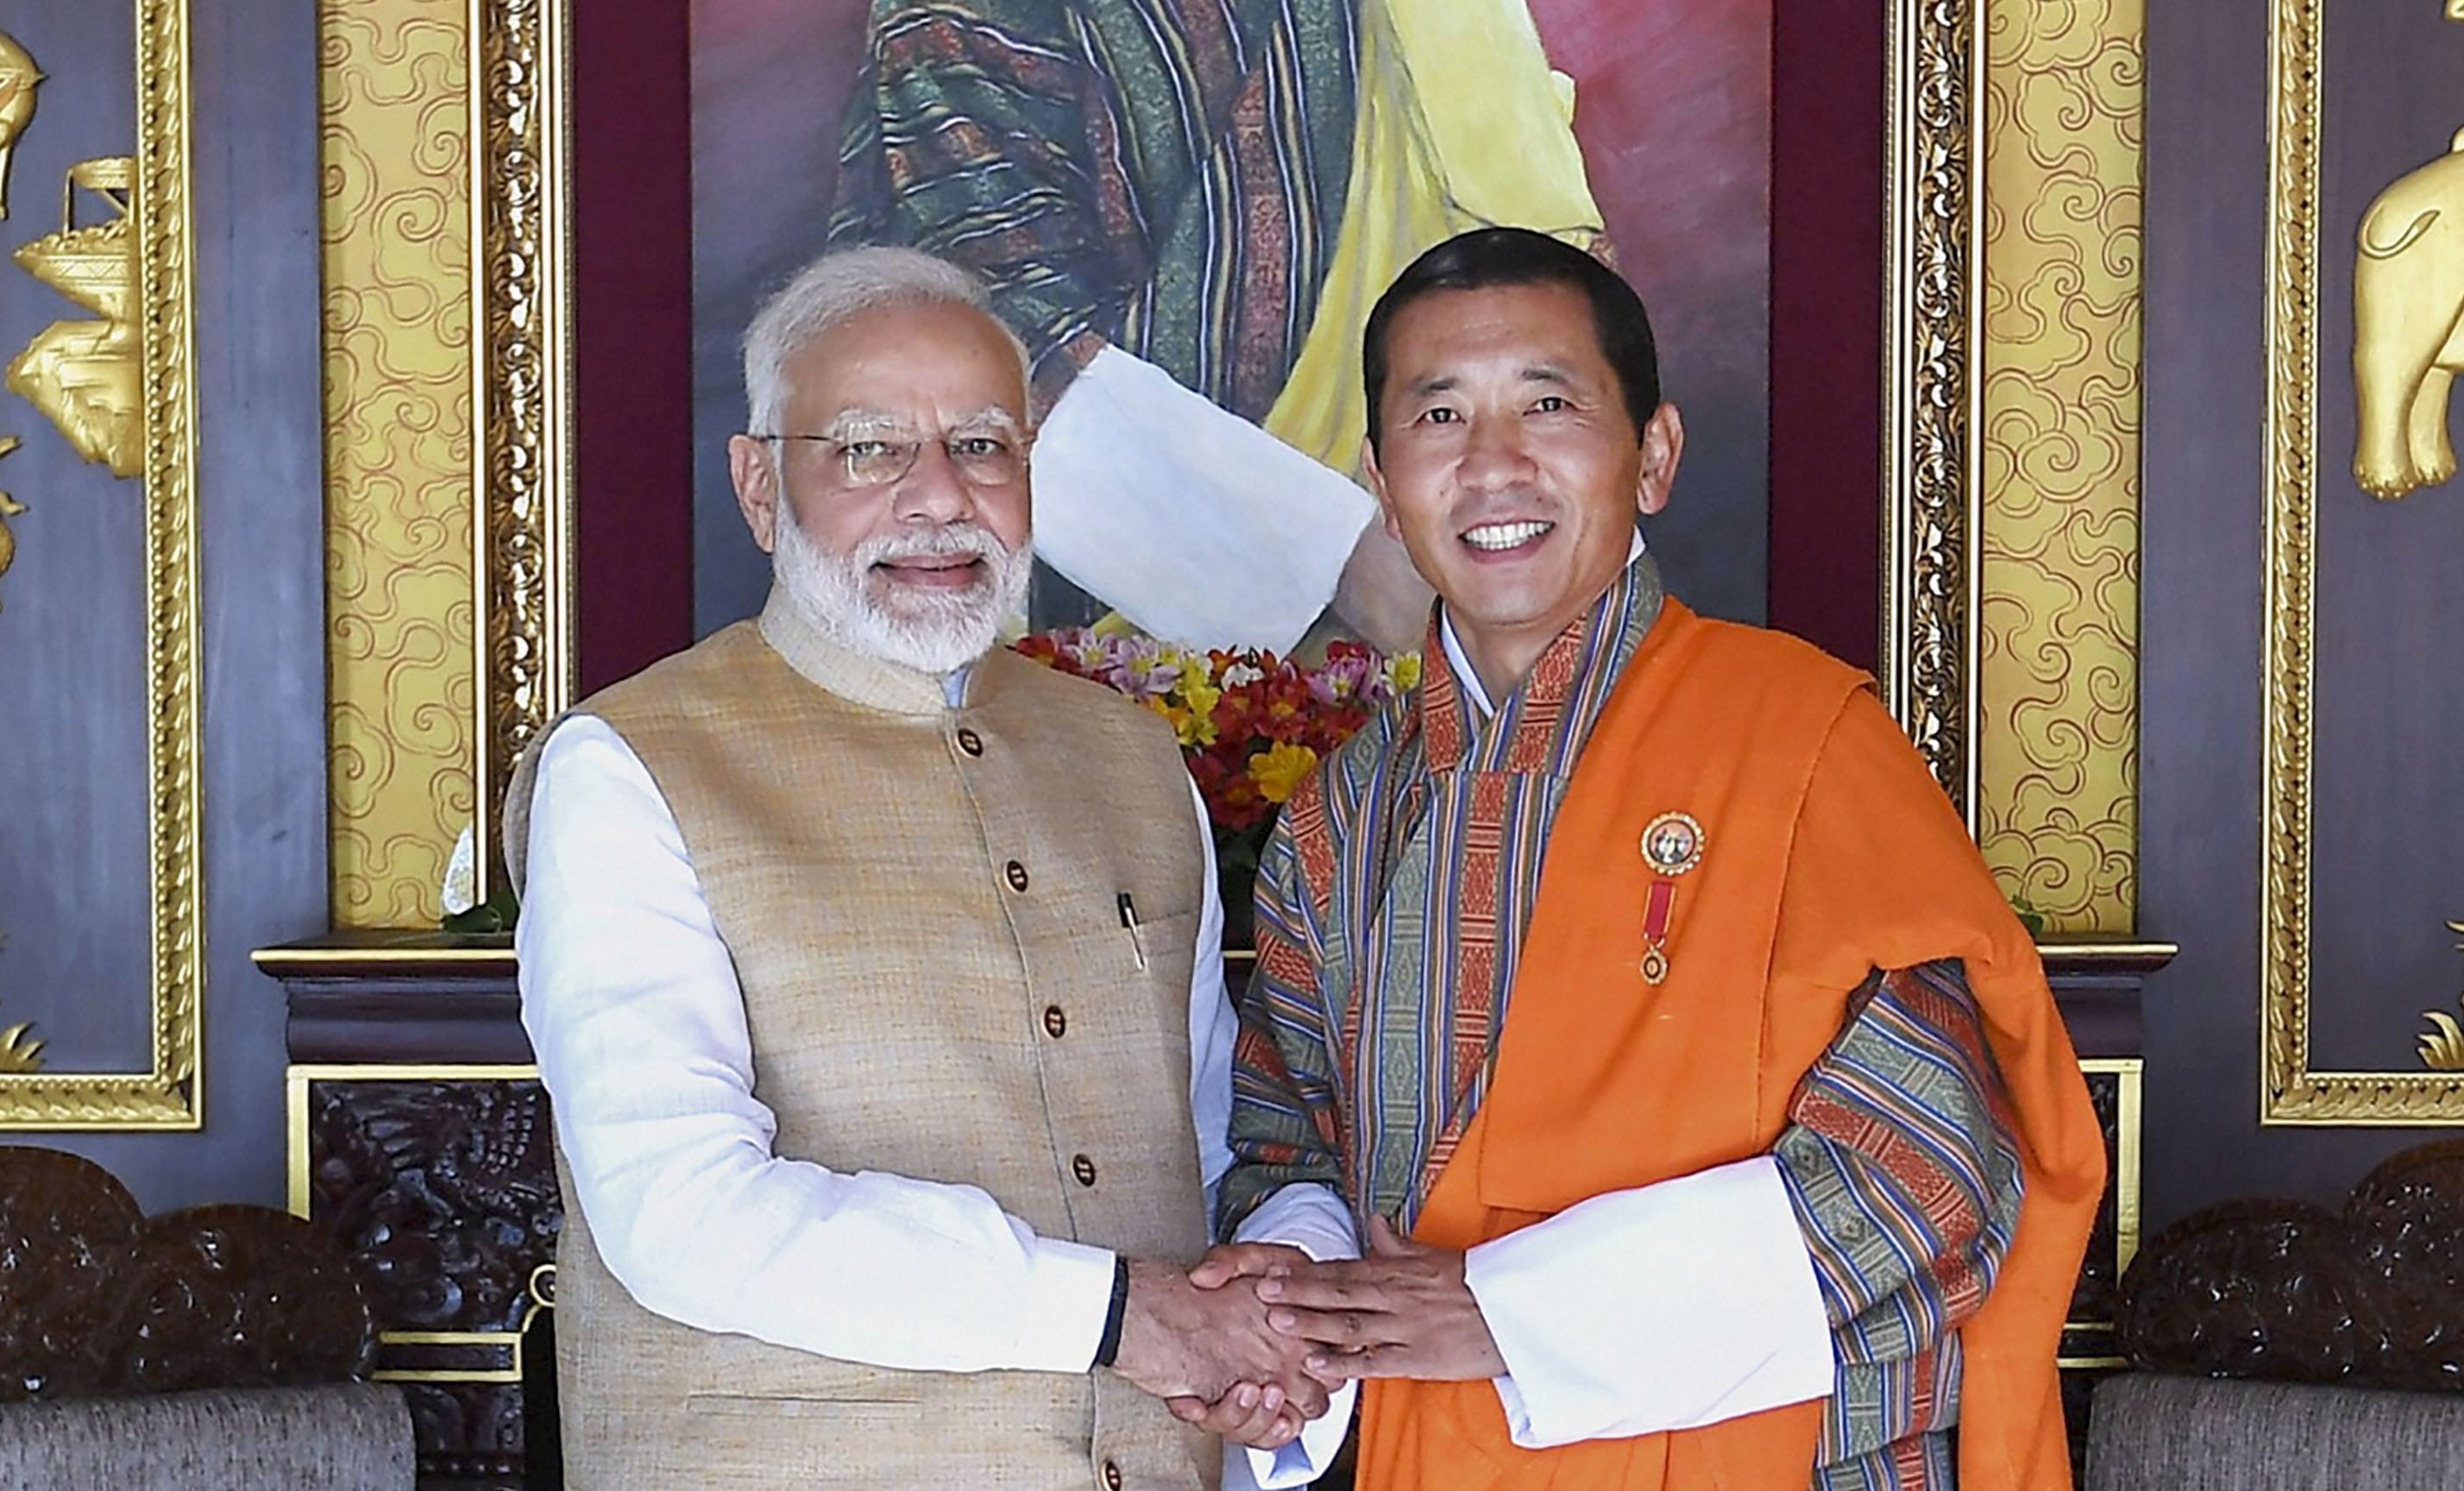 Prime Minister Modi, Narendra Modi, Lotay Tshering, Bhutan, Paro, Thimpu, The Federal, English news website